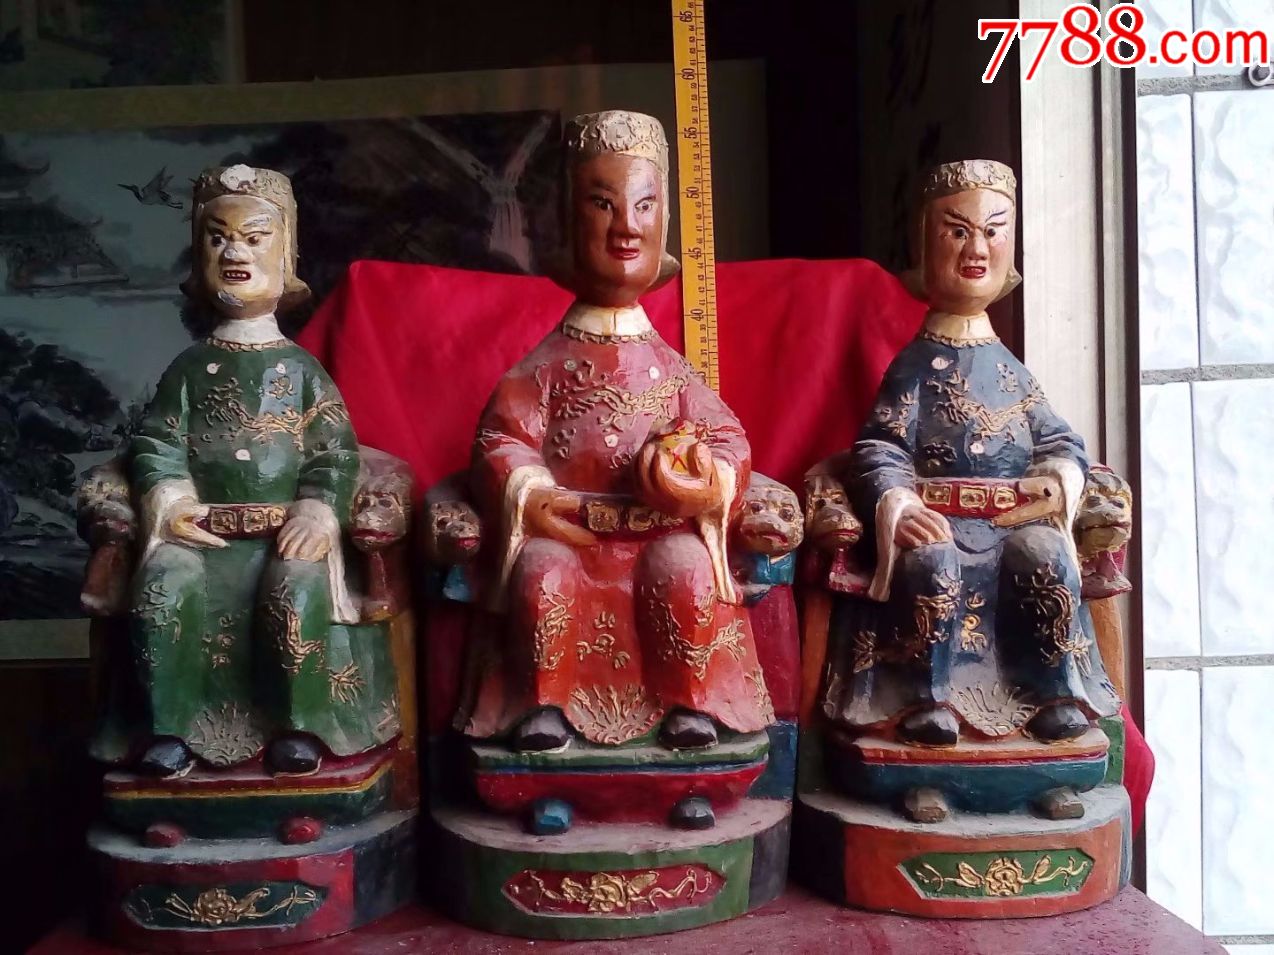 包邮特价,香樟木纯手工雕刻三奶夫人神像菩萨佛像,三尊总重21斤